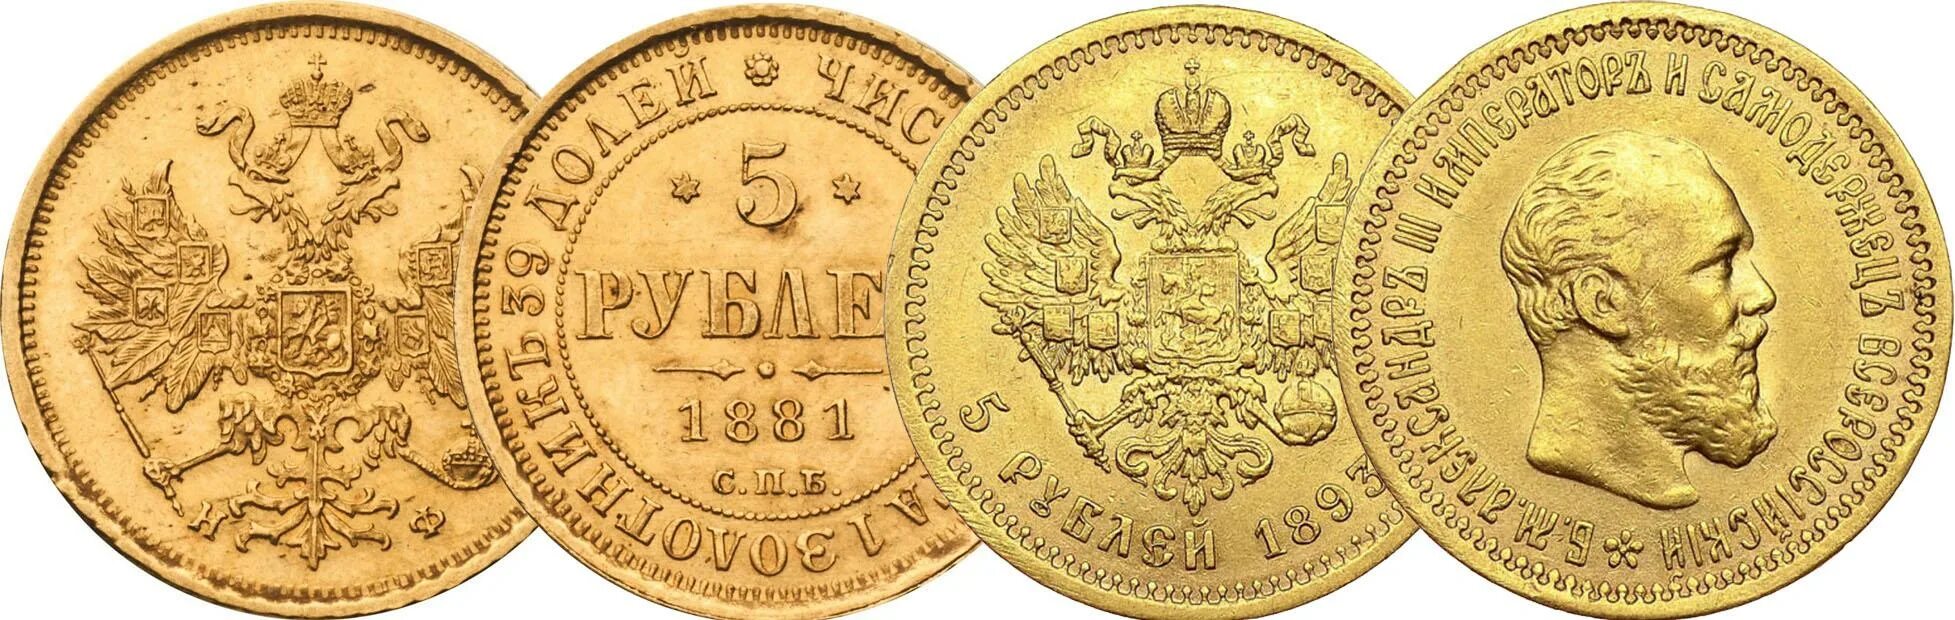 Золотой рубль Витте. Монеты 1894 года. Золотые монеты Витте. Цена монеты 5 рублей золотая